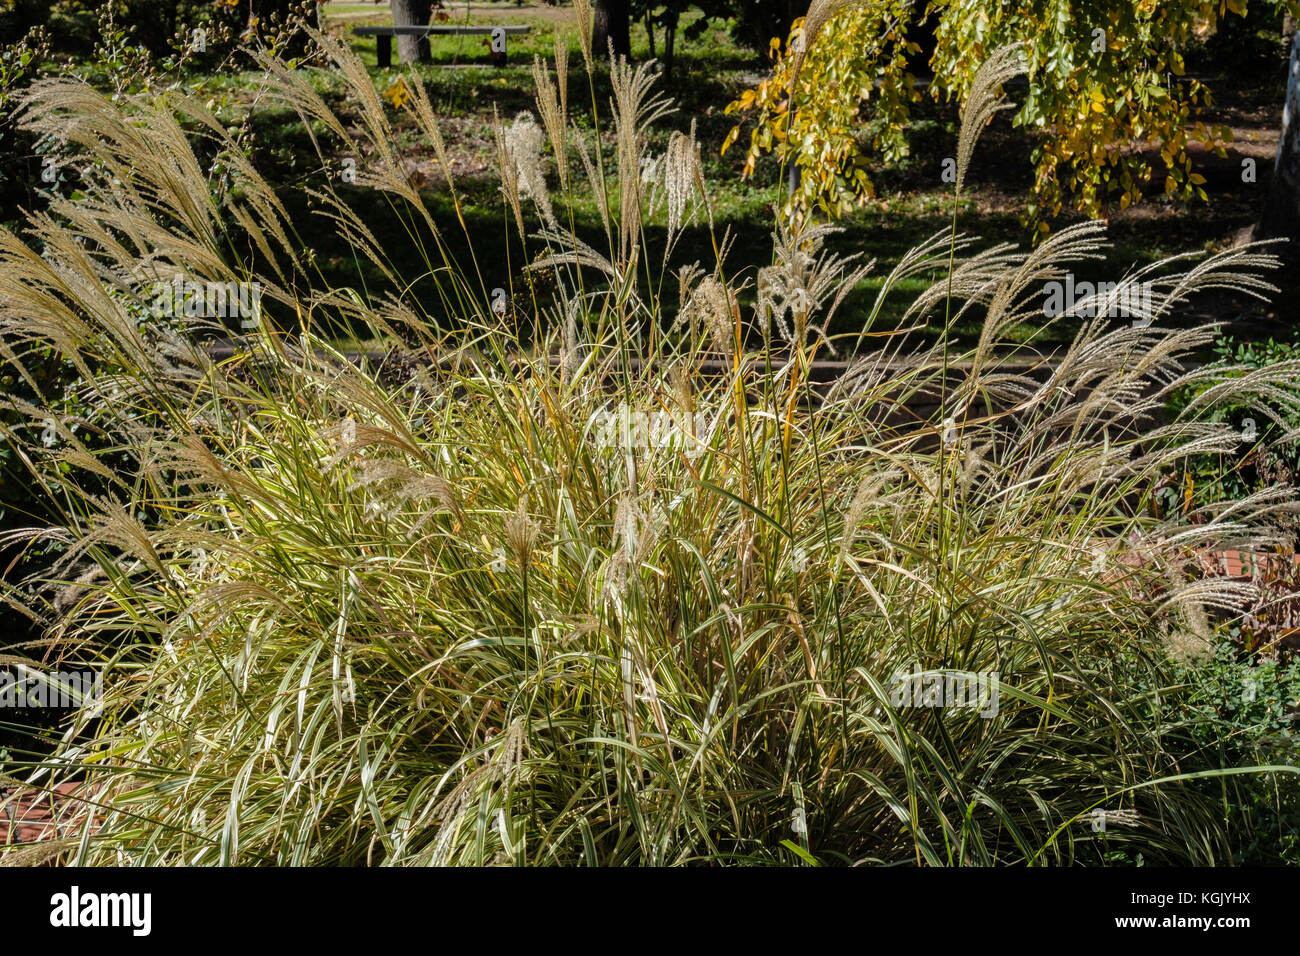 Chinesische Silber Gras, Miscanthus sinensis, in einem botanischen Garten Oklahoma City, Oklahoma, USA wächst. Stockfoto